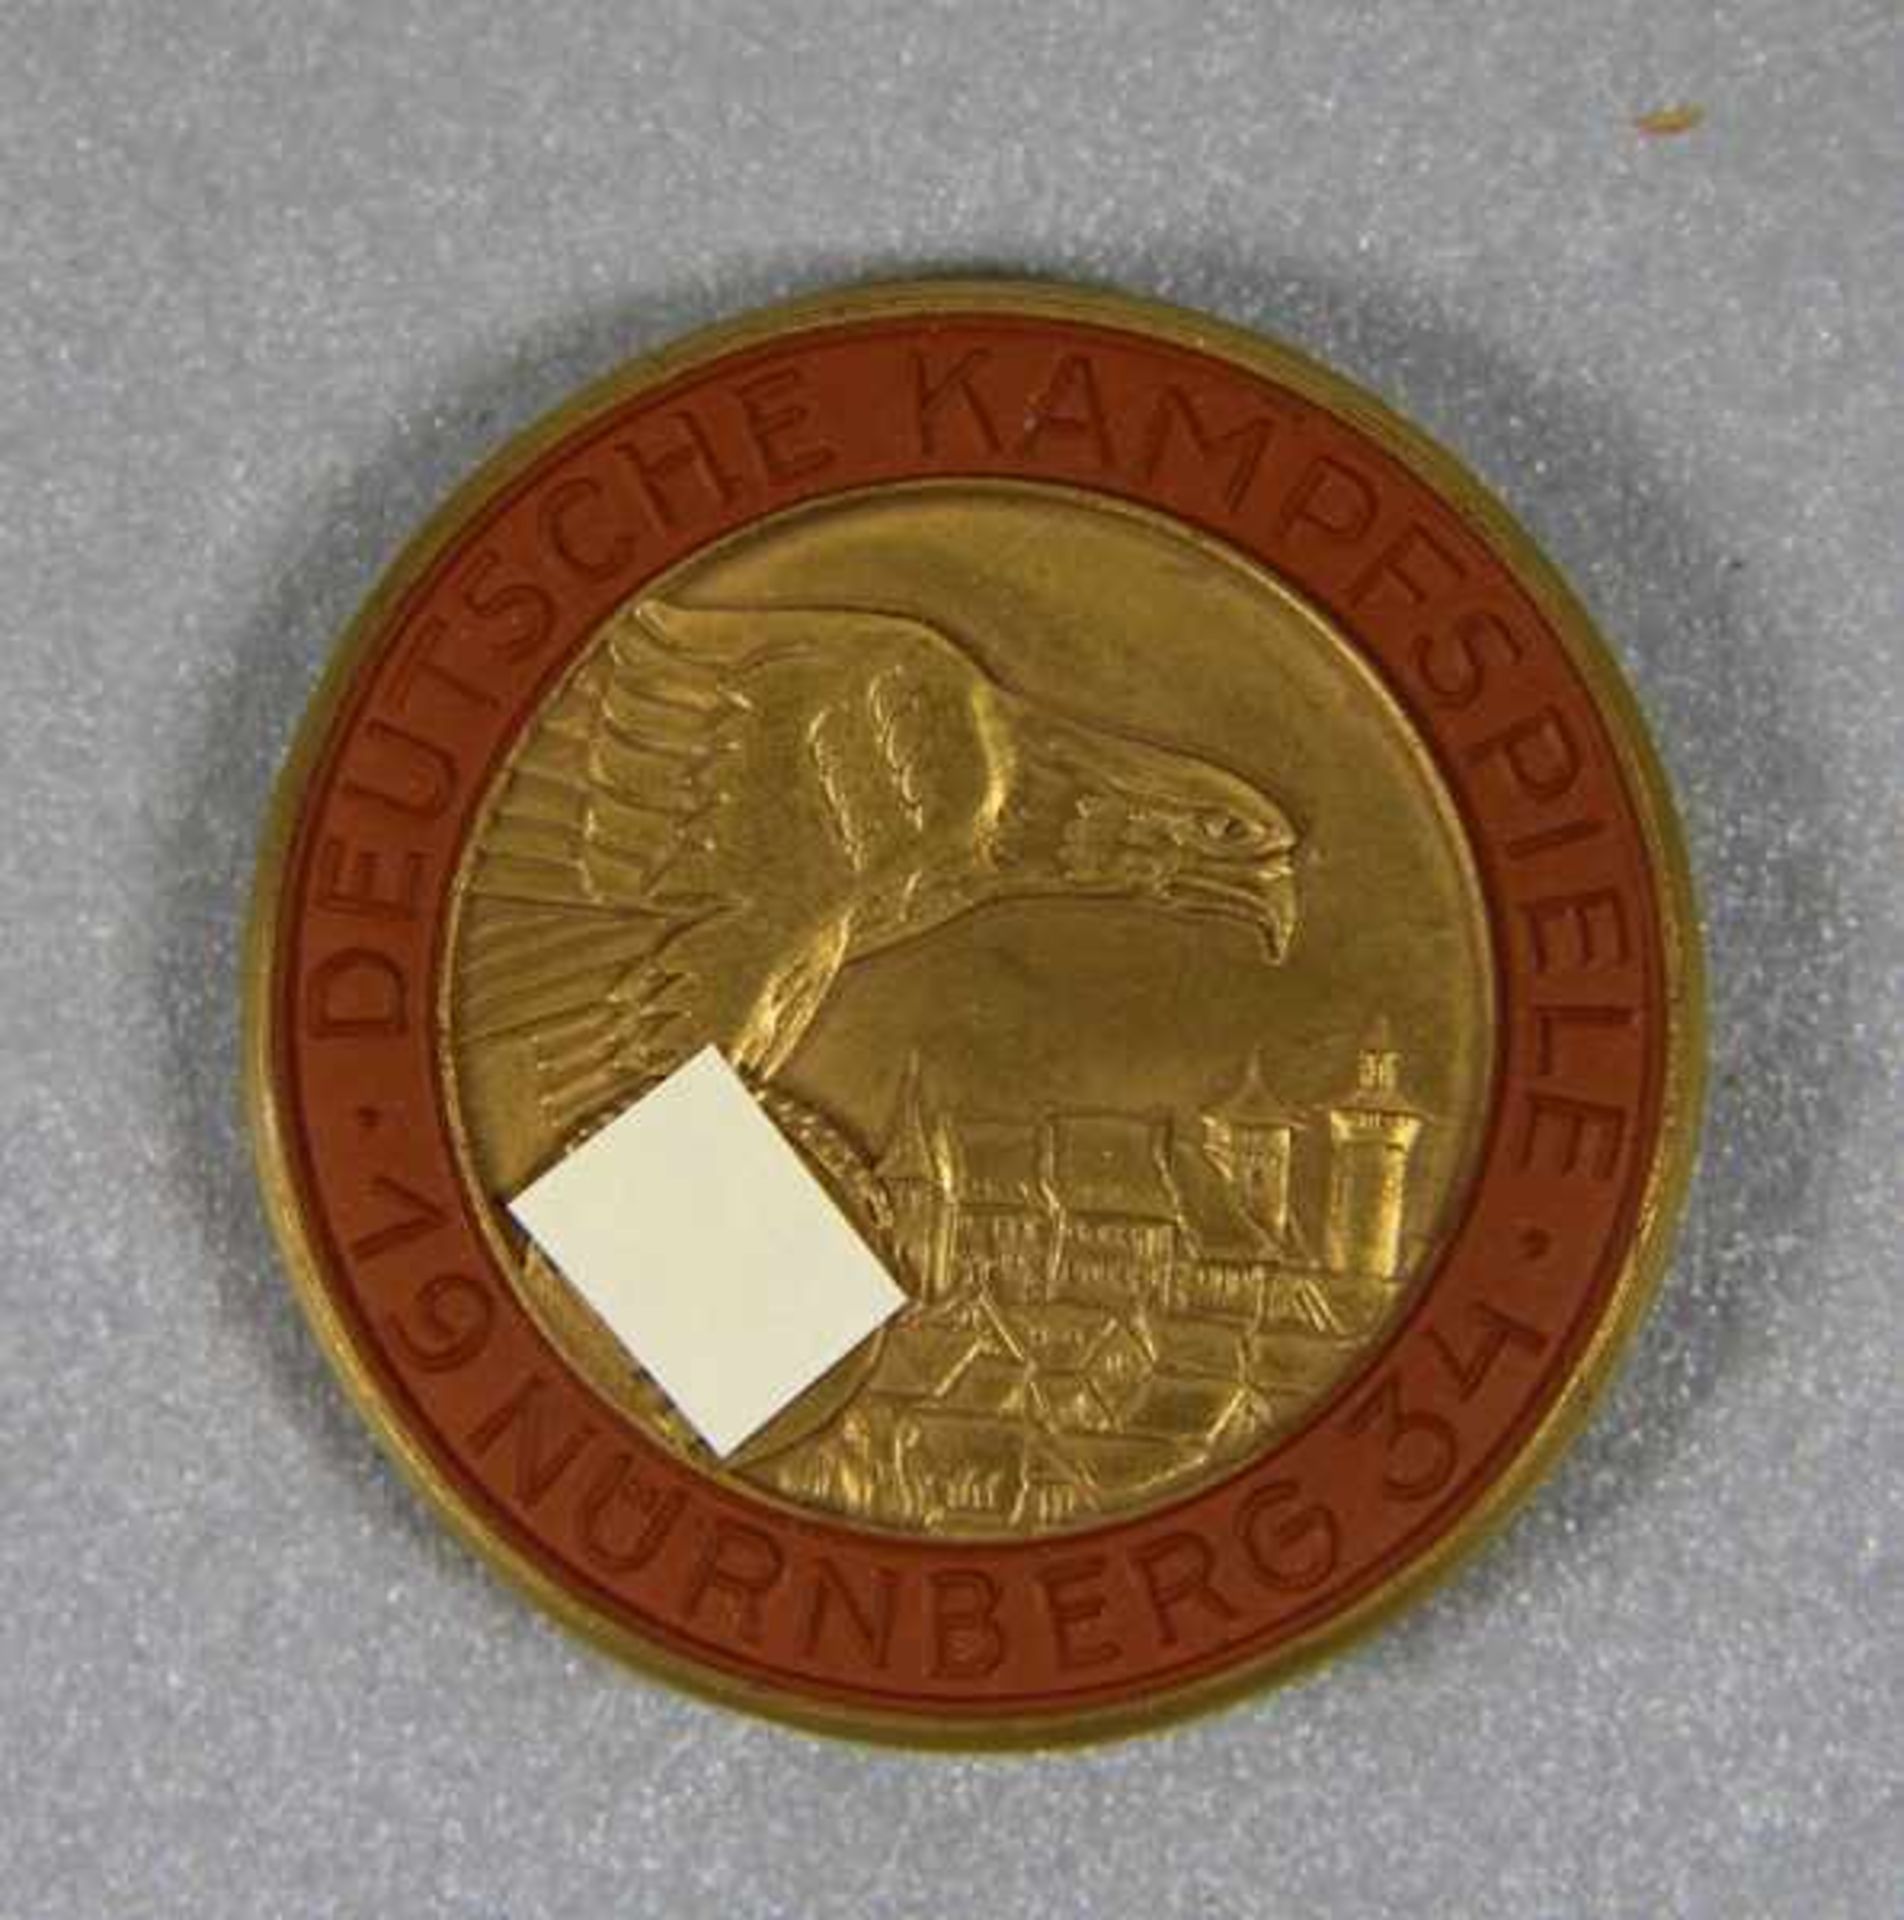 Medaille Deutsche KampfspieleHutschenreuther, Böttger-Steinzeug, Medaille Deutsche Kampfspiele, dat.